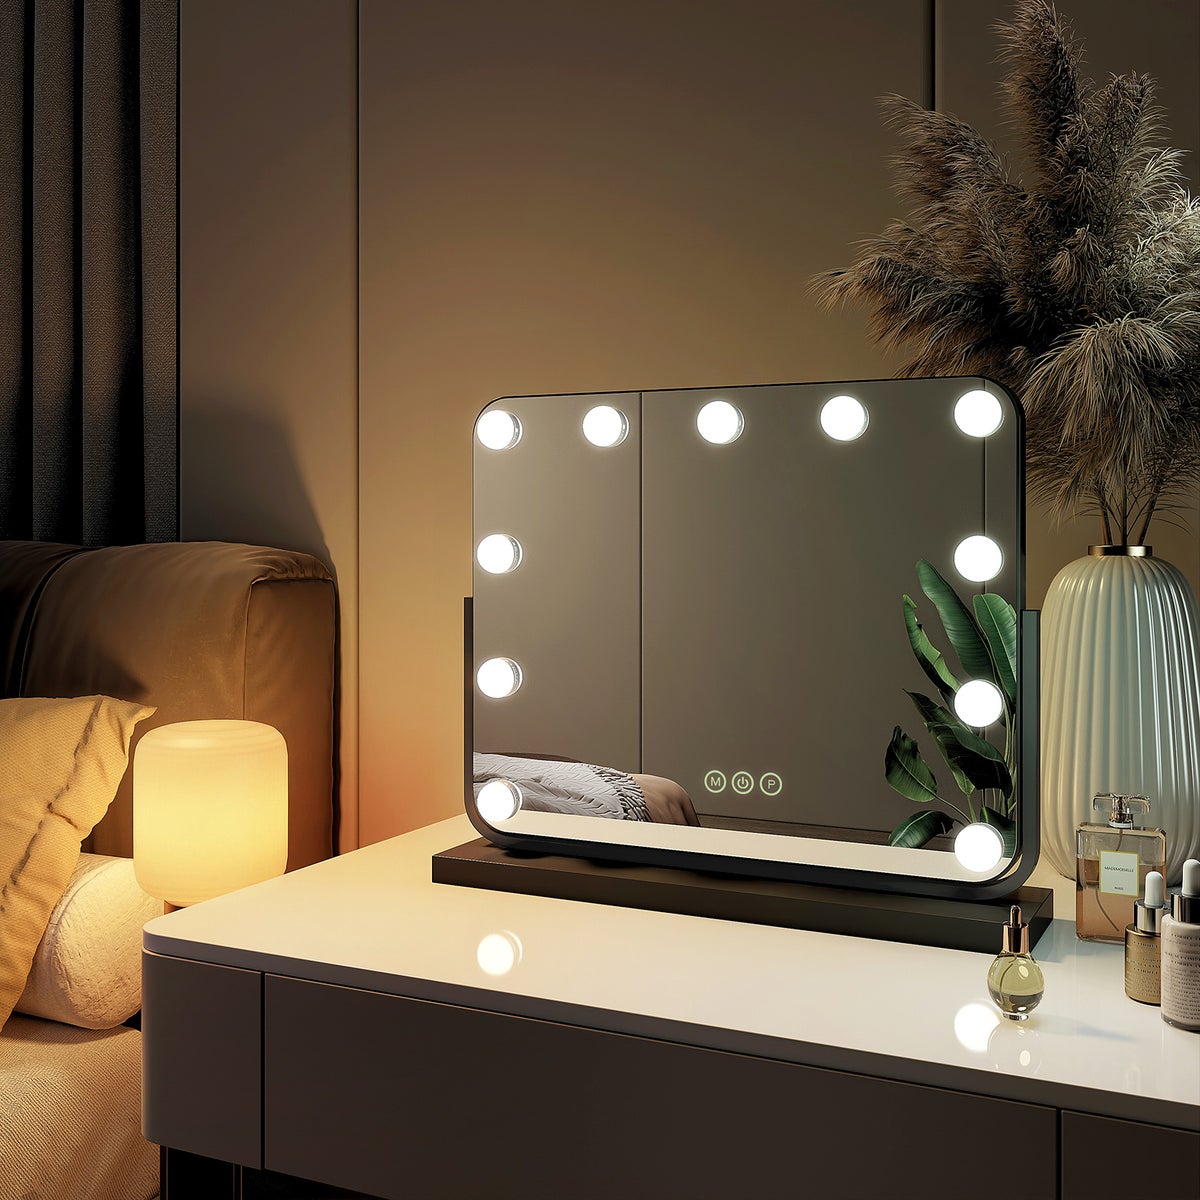 EMKE Kosmetikspiegel Hollywood Spiegel mit Beleuchtung 360 ° Drehbar Tischspiegel 3 Farbe Licht,11 Dimmbaren LED-Leuchtmitteln,Speicherfunktion,7 x Vergrößerungsspiegel,Schwarz,50 x 42 cm